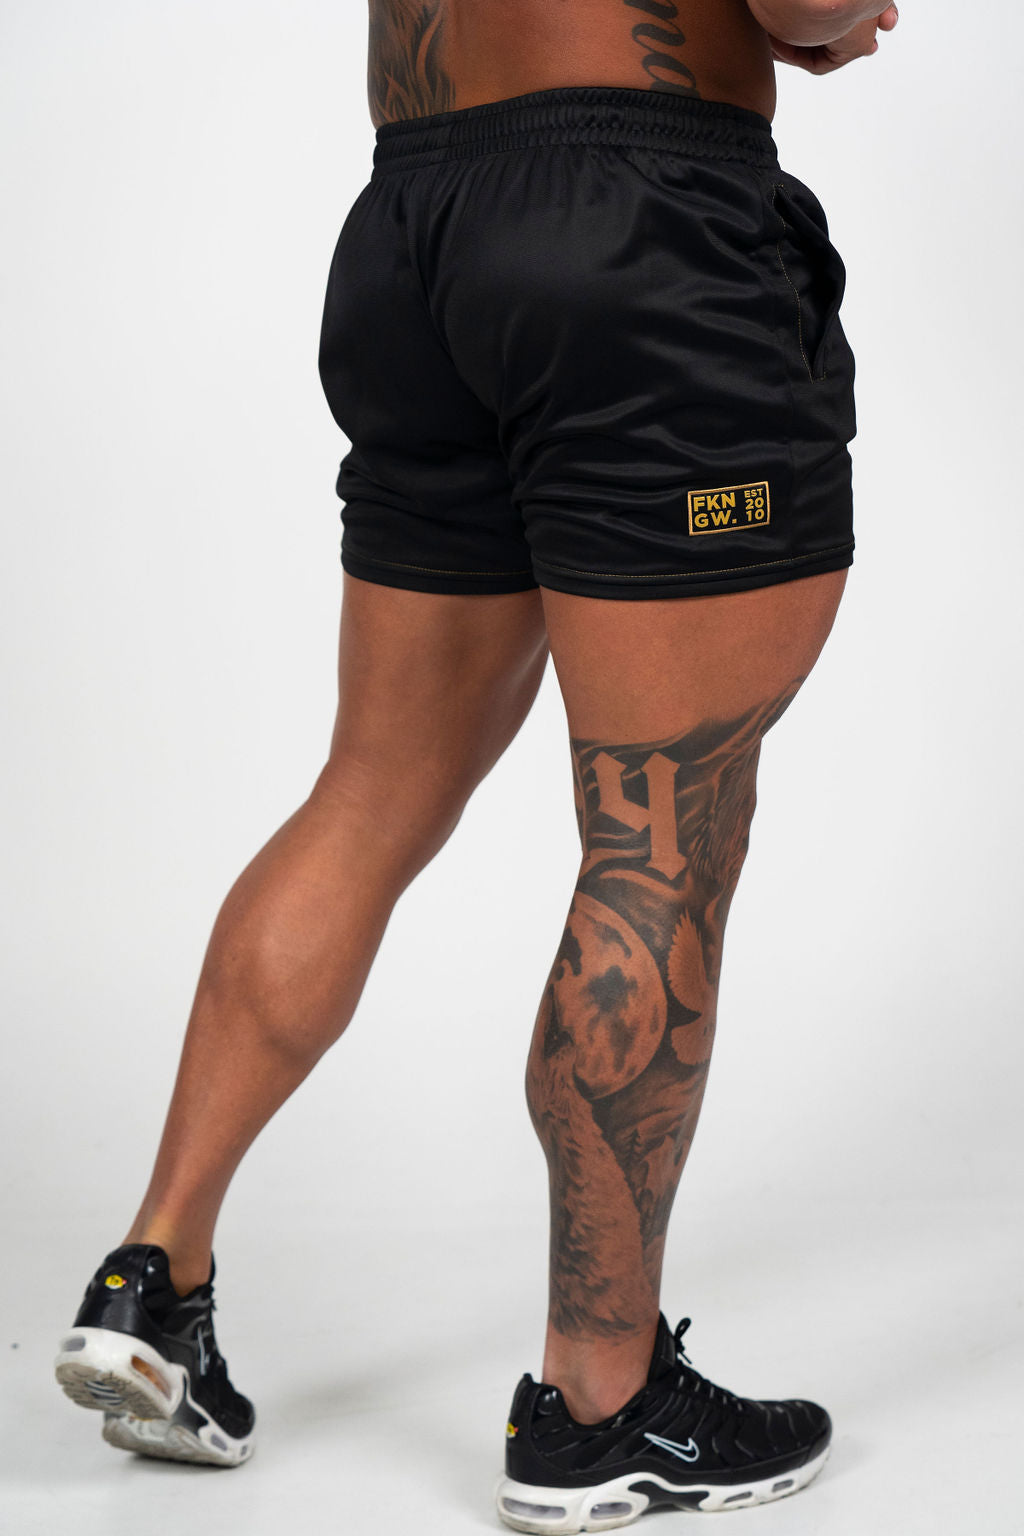 Relentless | Men's Gym Quad Fit Shorts | Black & Gold